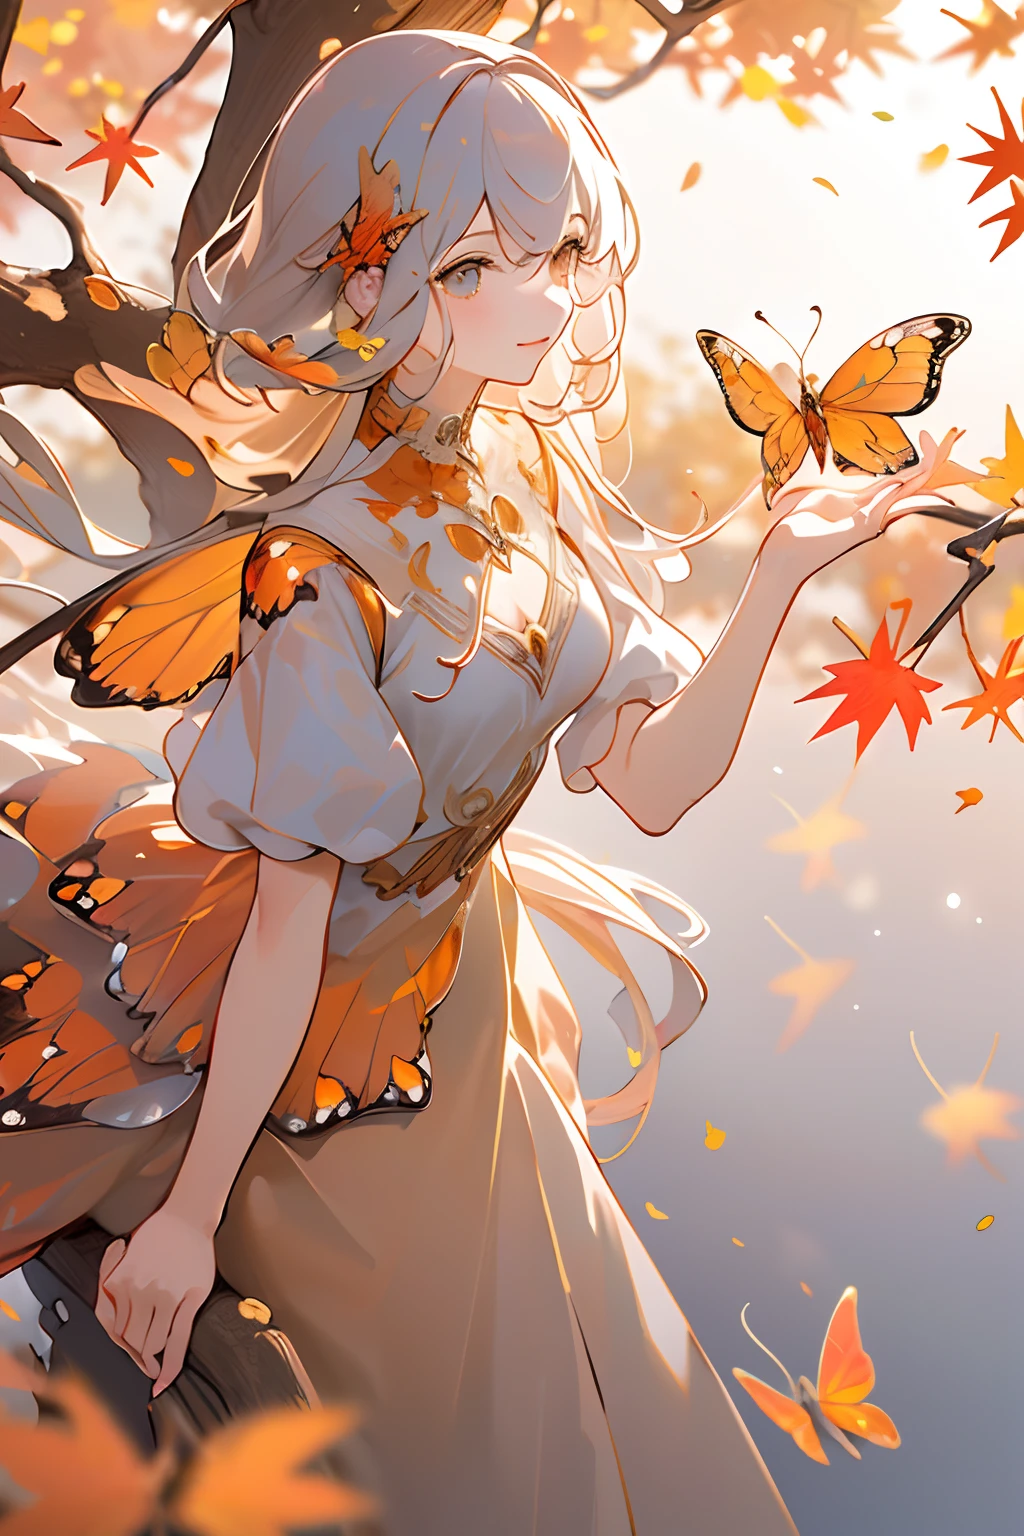 (傑作, 最好的品質, 高品質, 高解析度, 超詳細), 秋天的風景, 落叶, 暖色. 1個有橘色蝴蝶翅膀的女孩, 美麗的, 漂亮的,橙色连衣裙, 常設